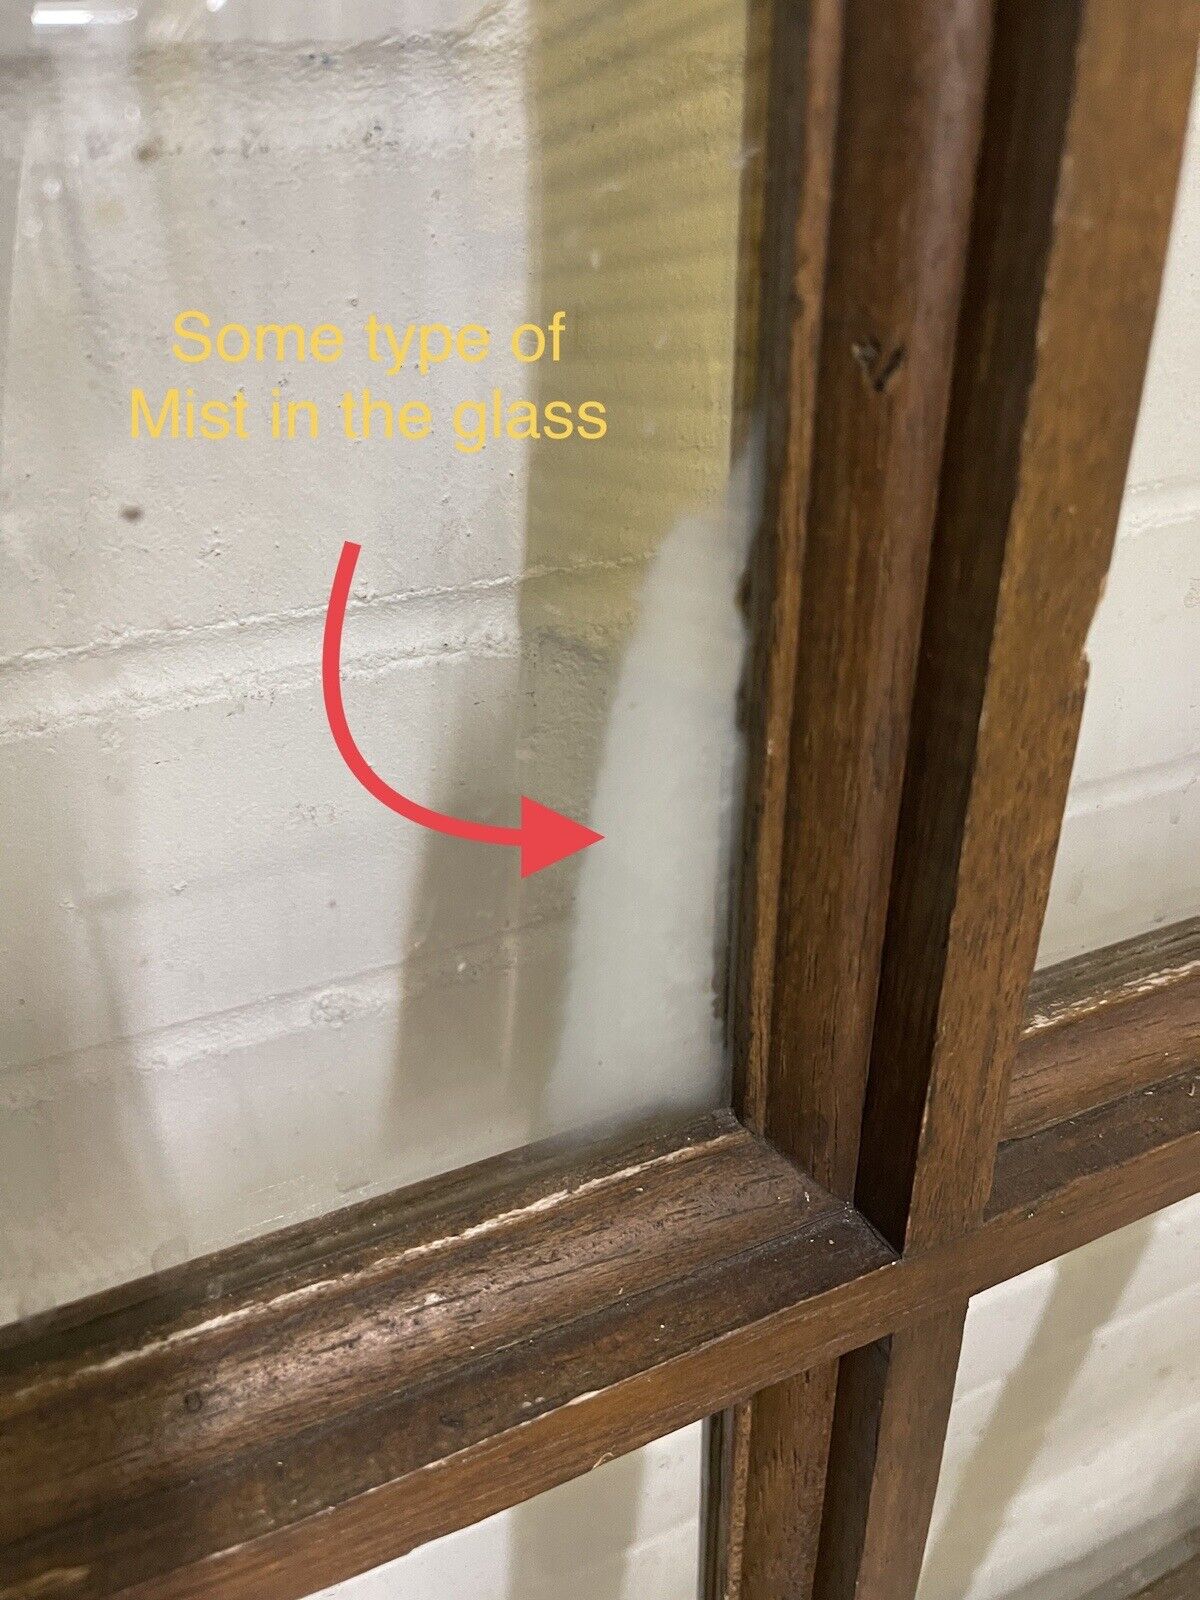 Solid Hardwood External Glass panel Stable Door 1980 X 758mm